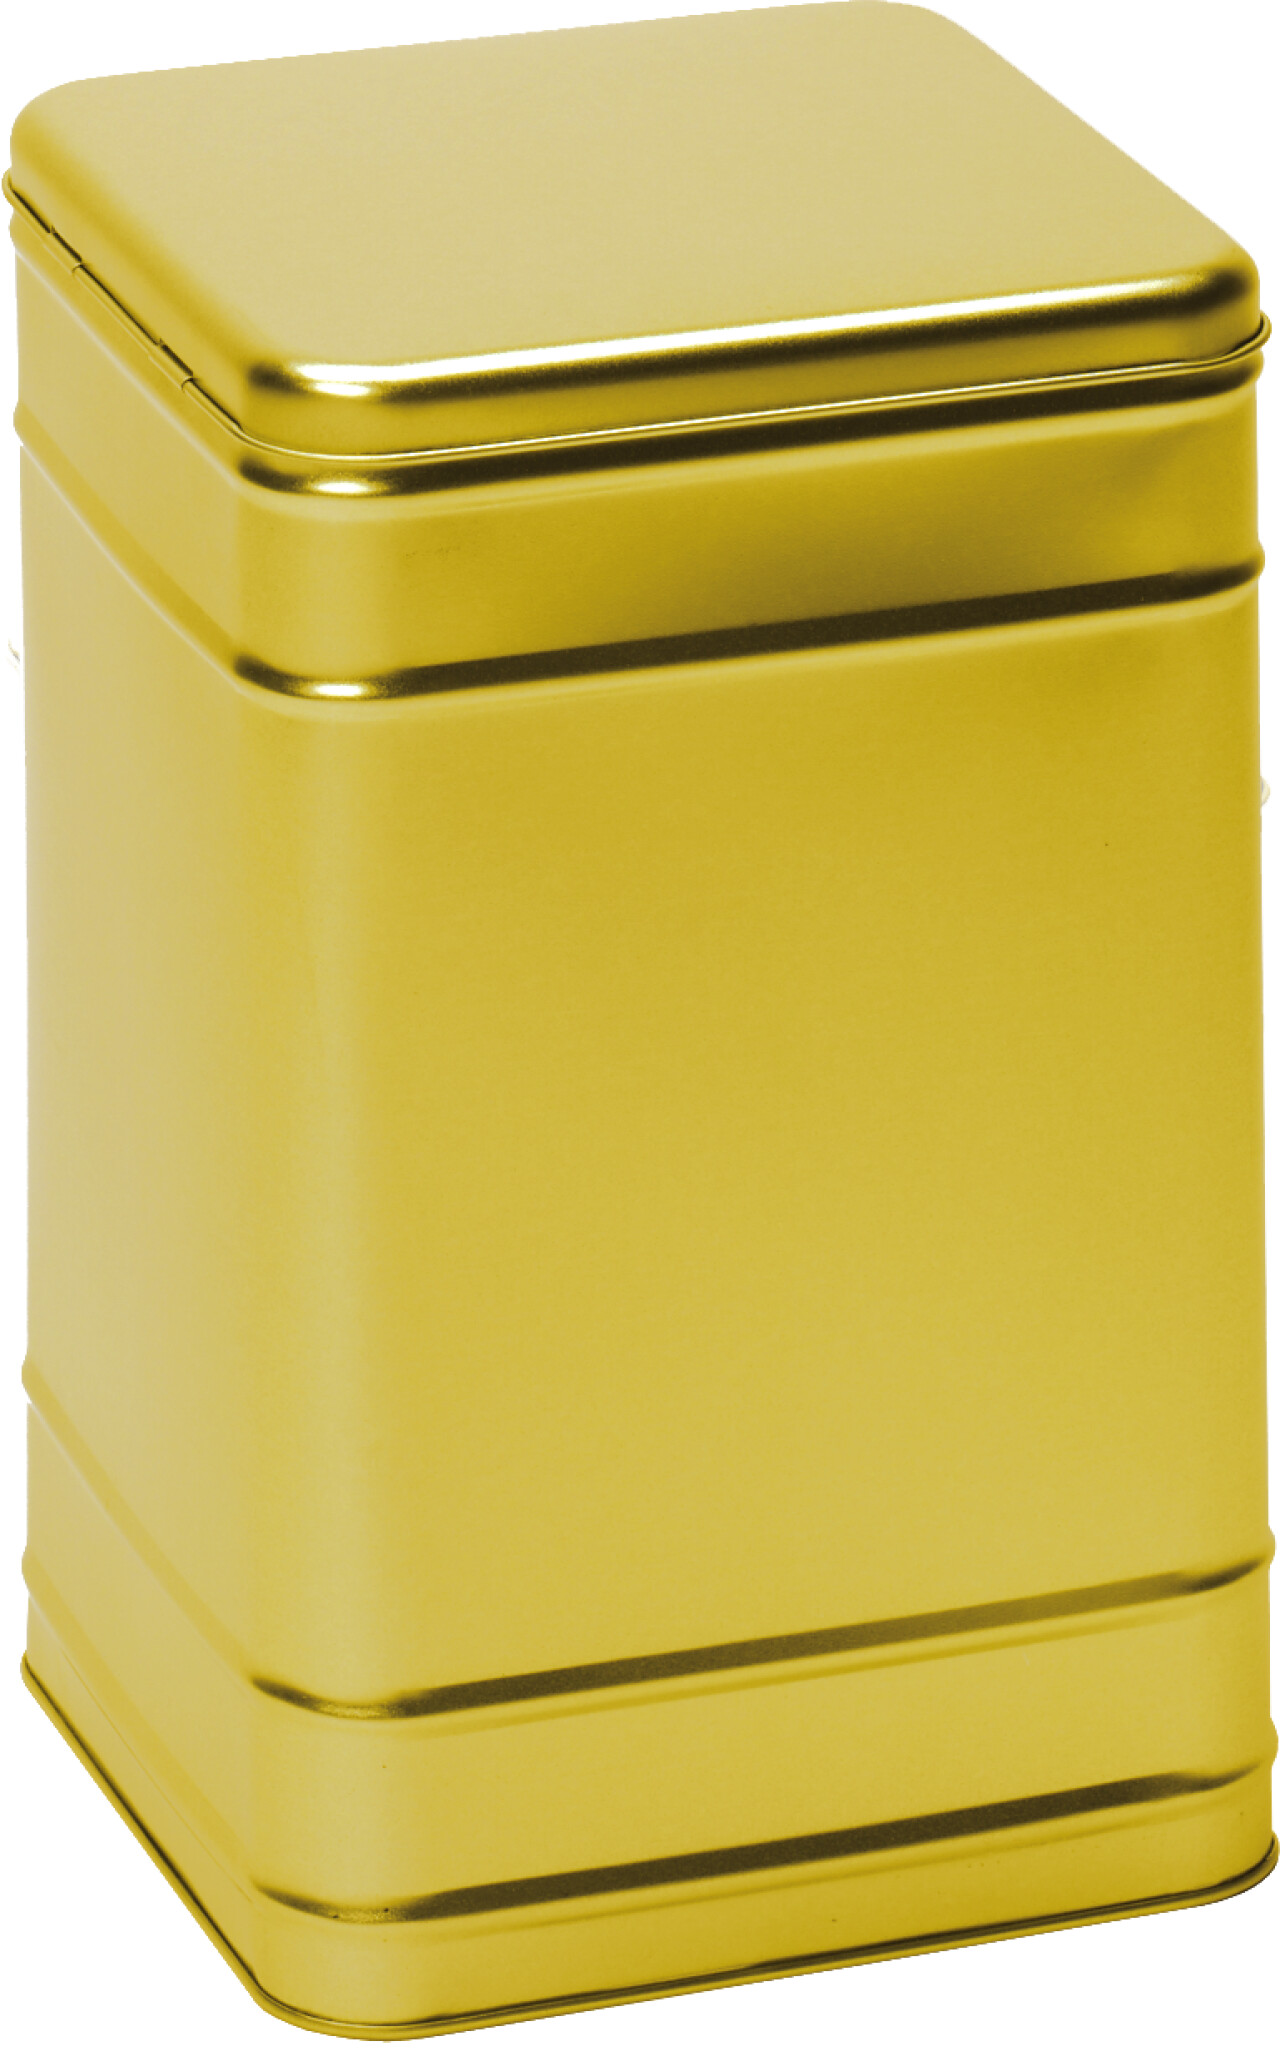 Storage Tin, 2000g, mattgolden